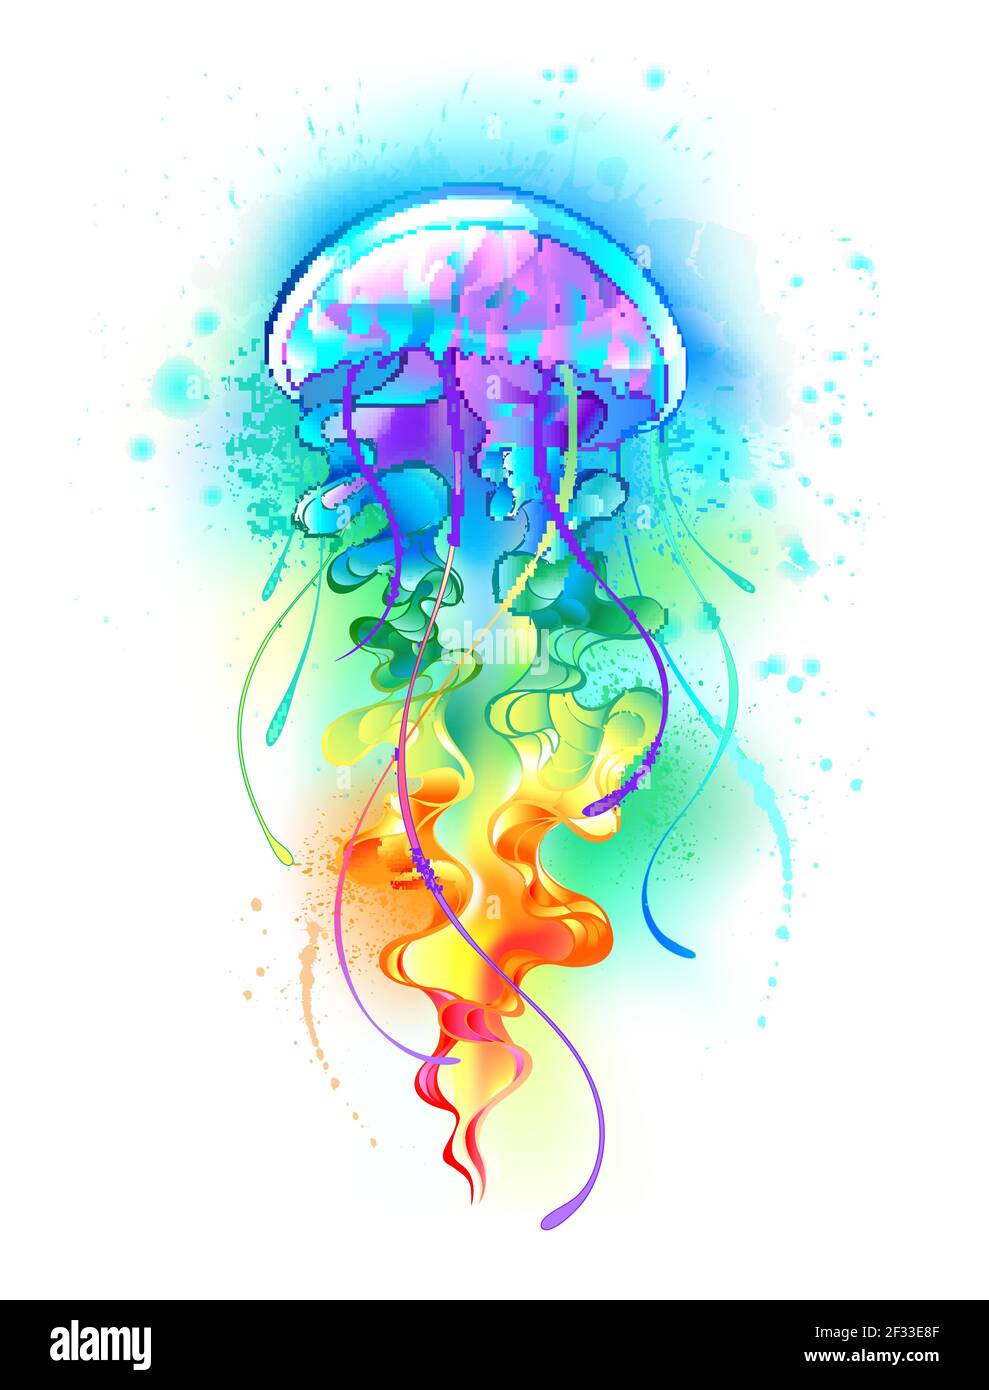 Grande, iridescente, artisticamente disegnata, medusa luminosa, con lunghi tentacoli su bianco, dipinta con fondo multicolore ad acqua. Arcobaleno j Illustrazione Vettoriale